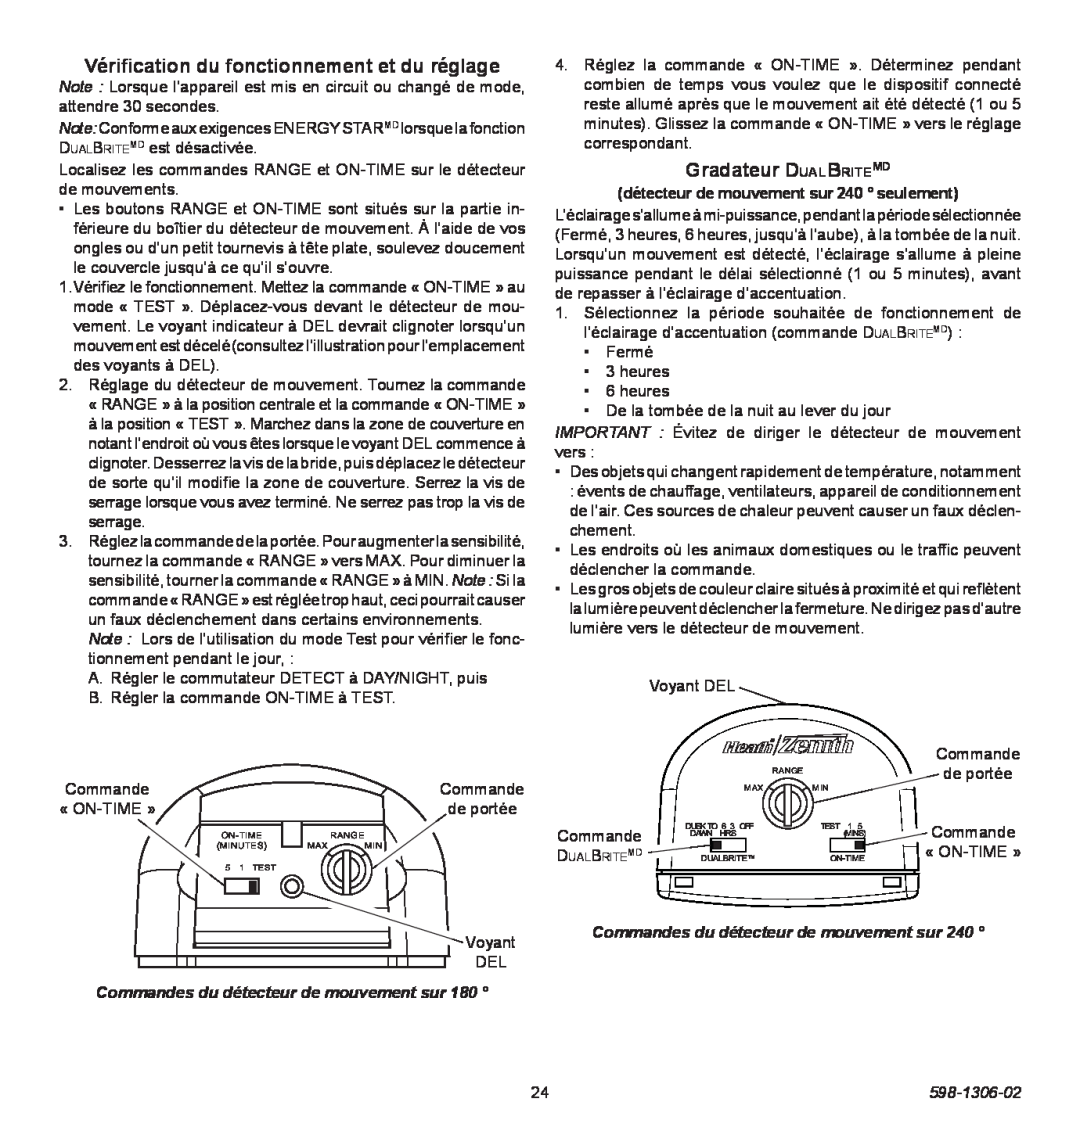 Heath Zenith 598-1306-02 manual Vérification du fonctionnement et du réglage, Gradateur DualBriteMD 